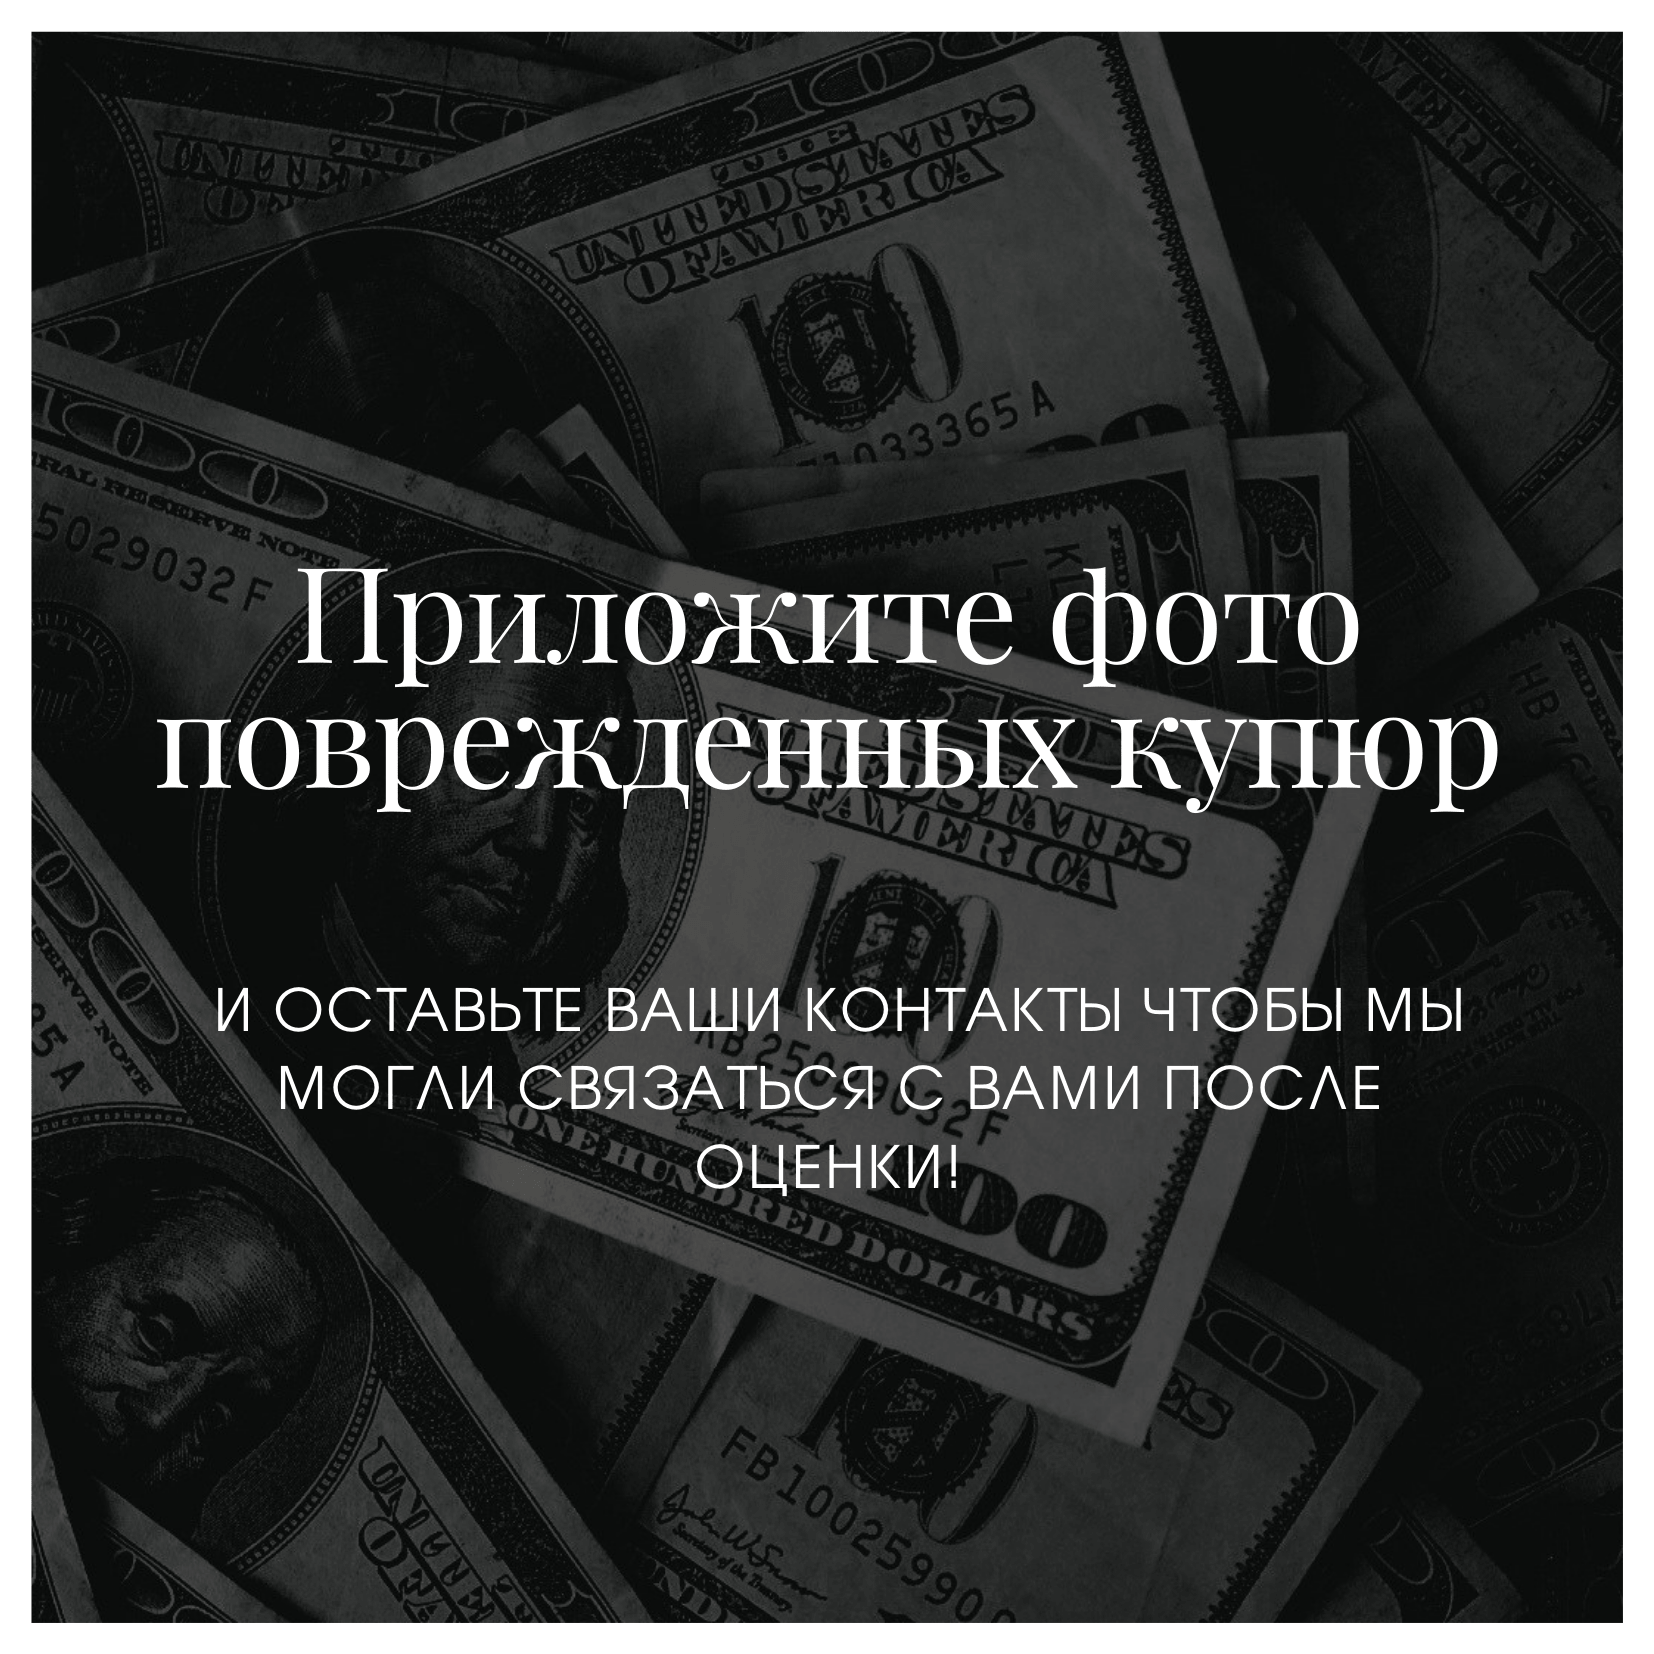 список обмен валют в москве